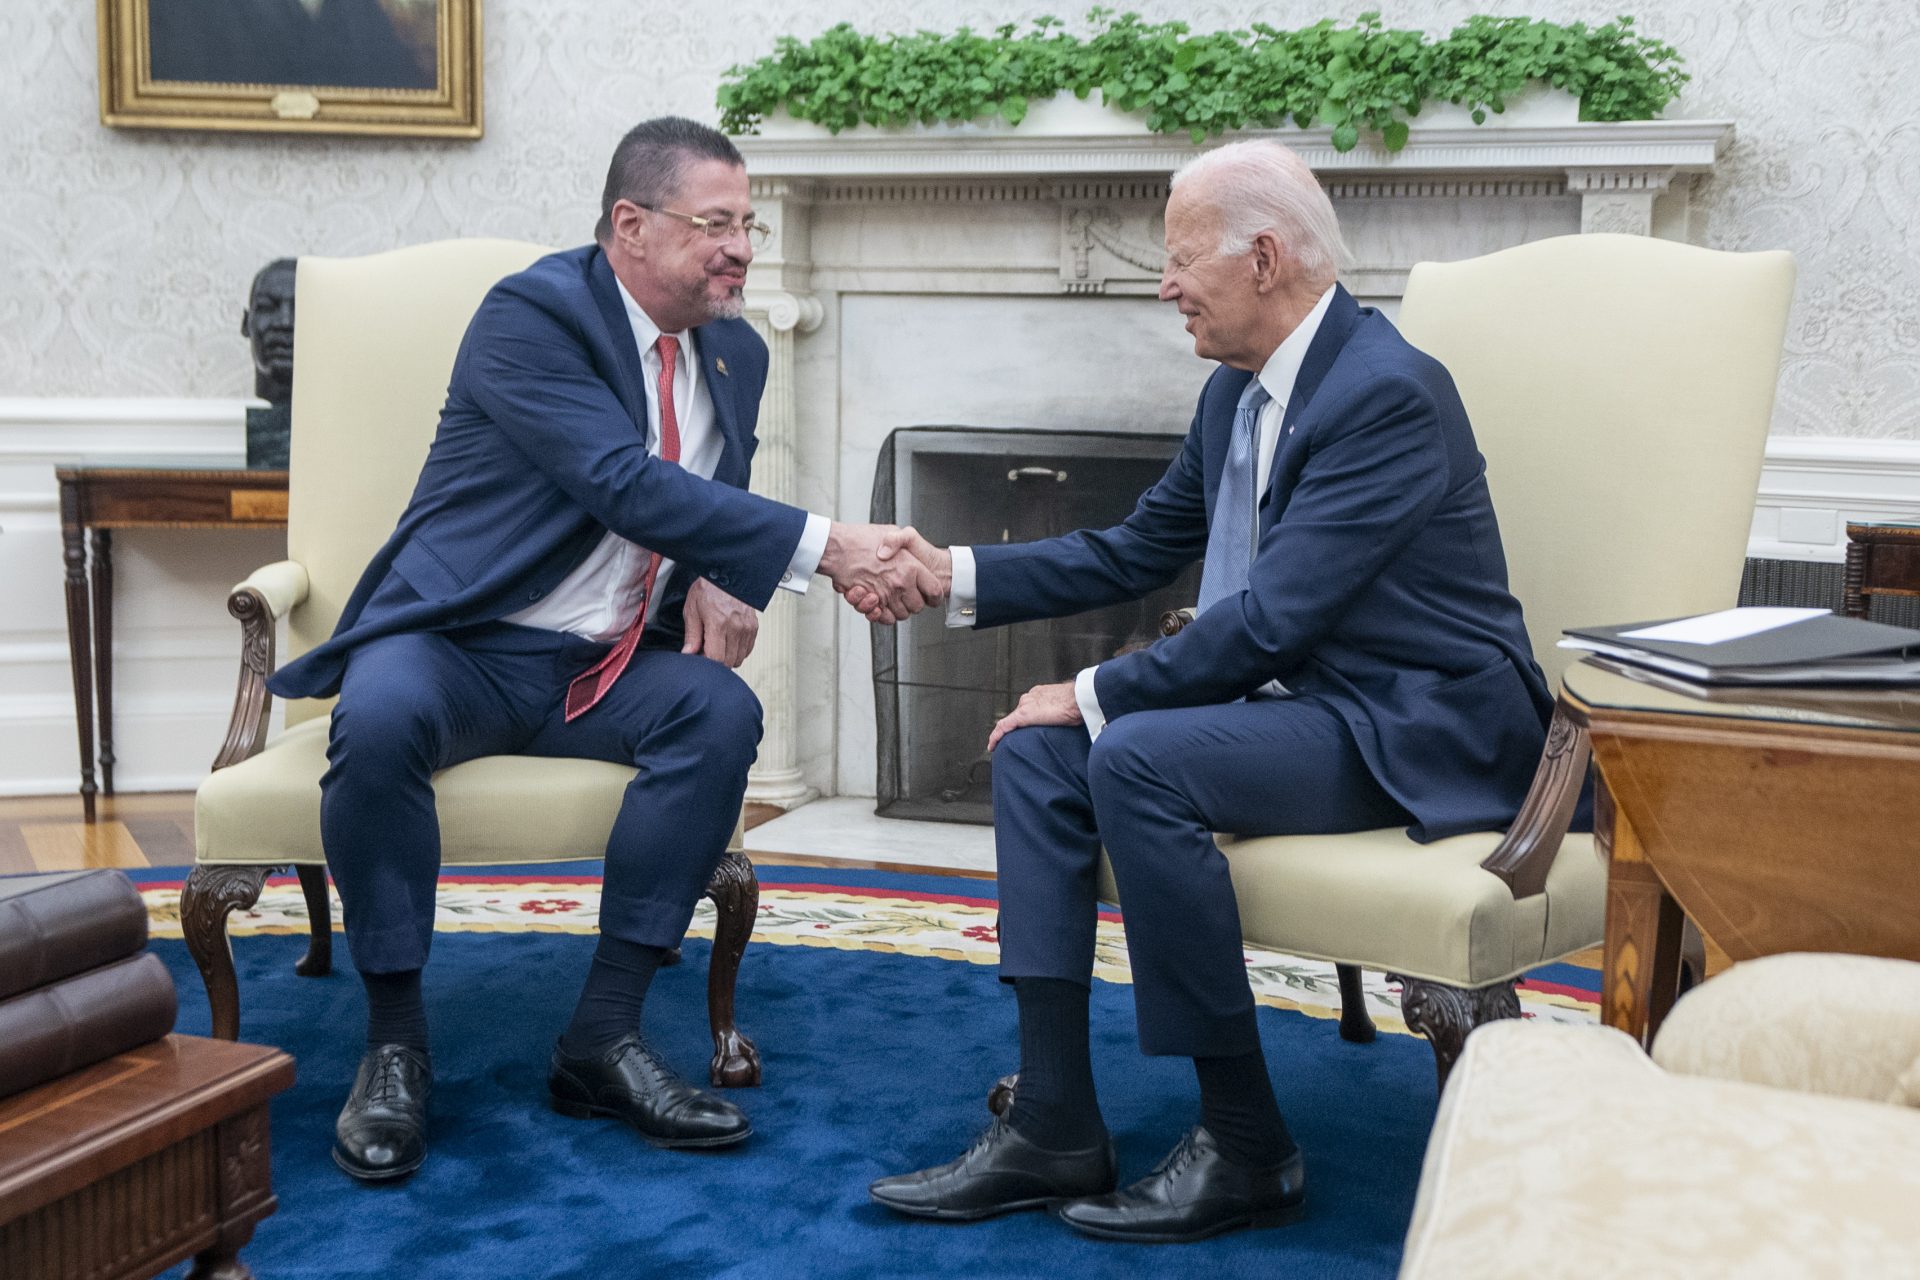 El presidente de EE.UU., Joe Biden, conversa con su homólogo de Costa Rica, Rodrigo Chaves Robles, durante una reunión en la Oficina Oval de la Casa Blanca, en Washington. EFE/Shawn Thew/Pool